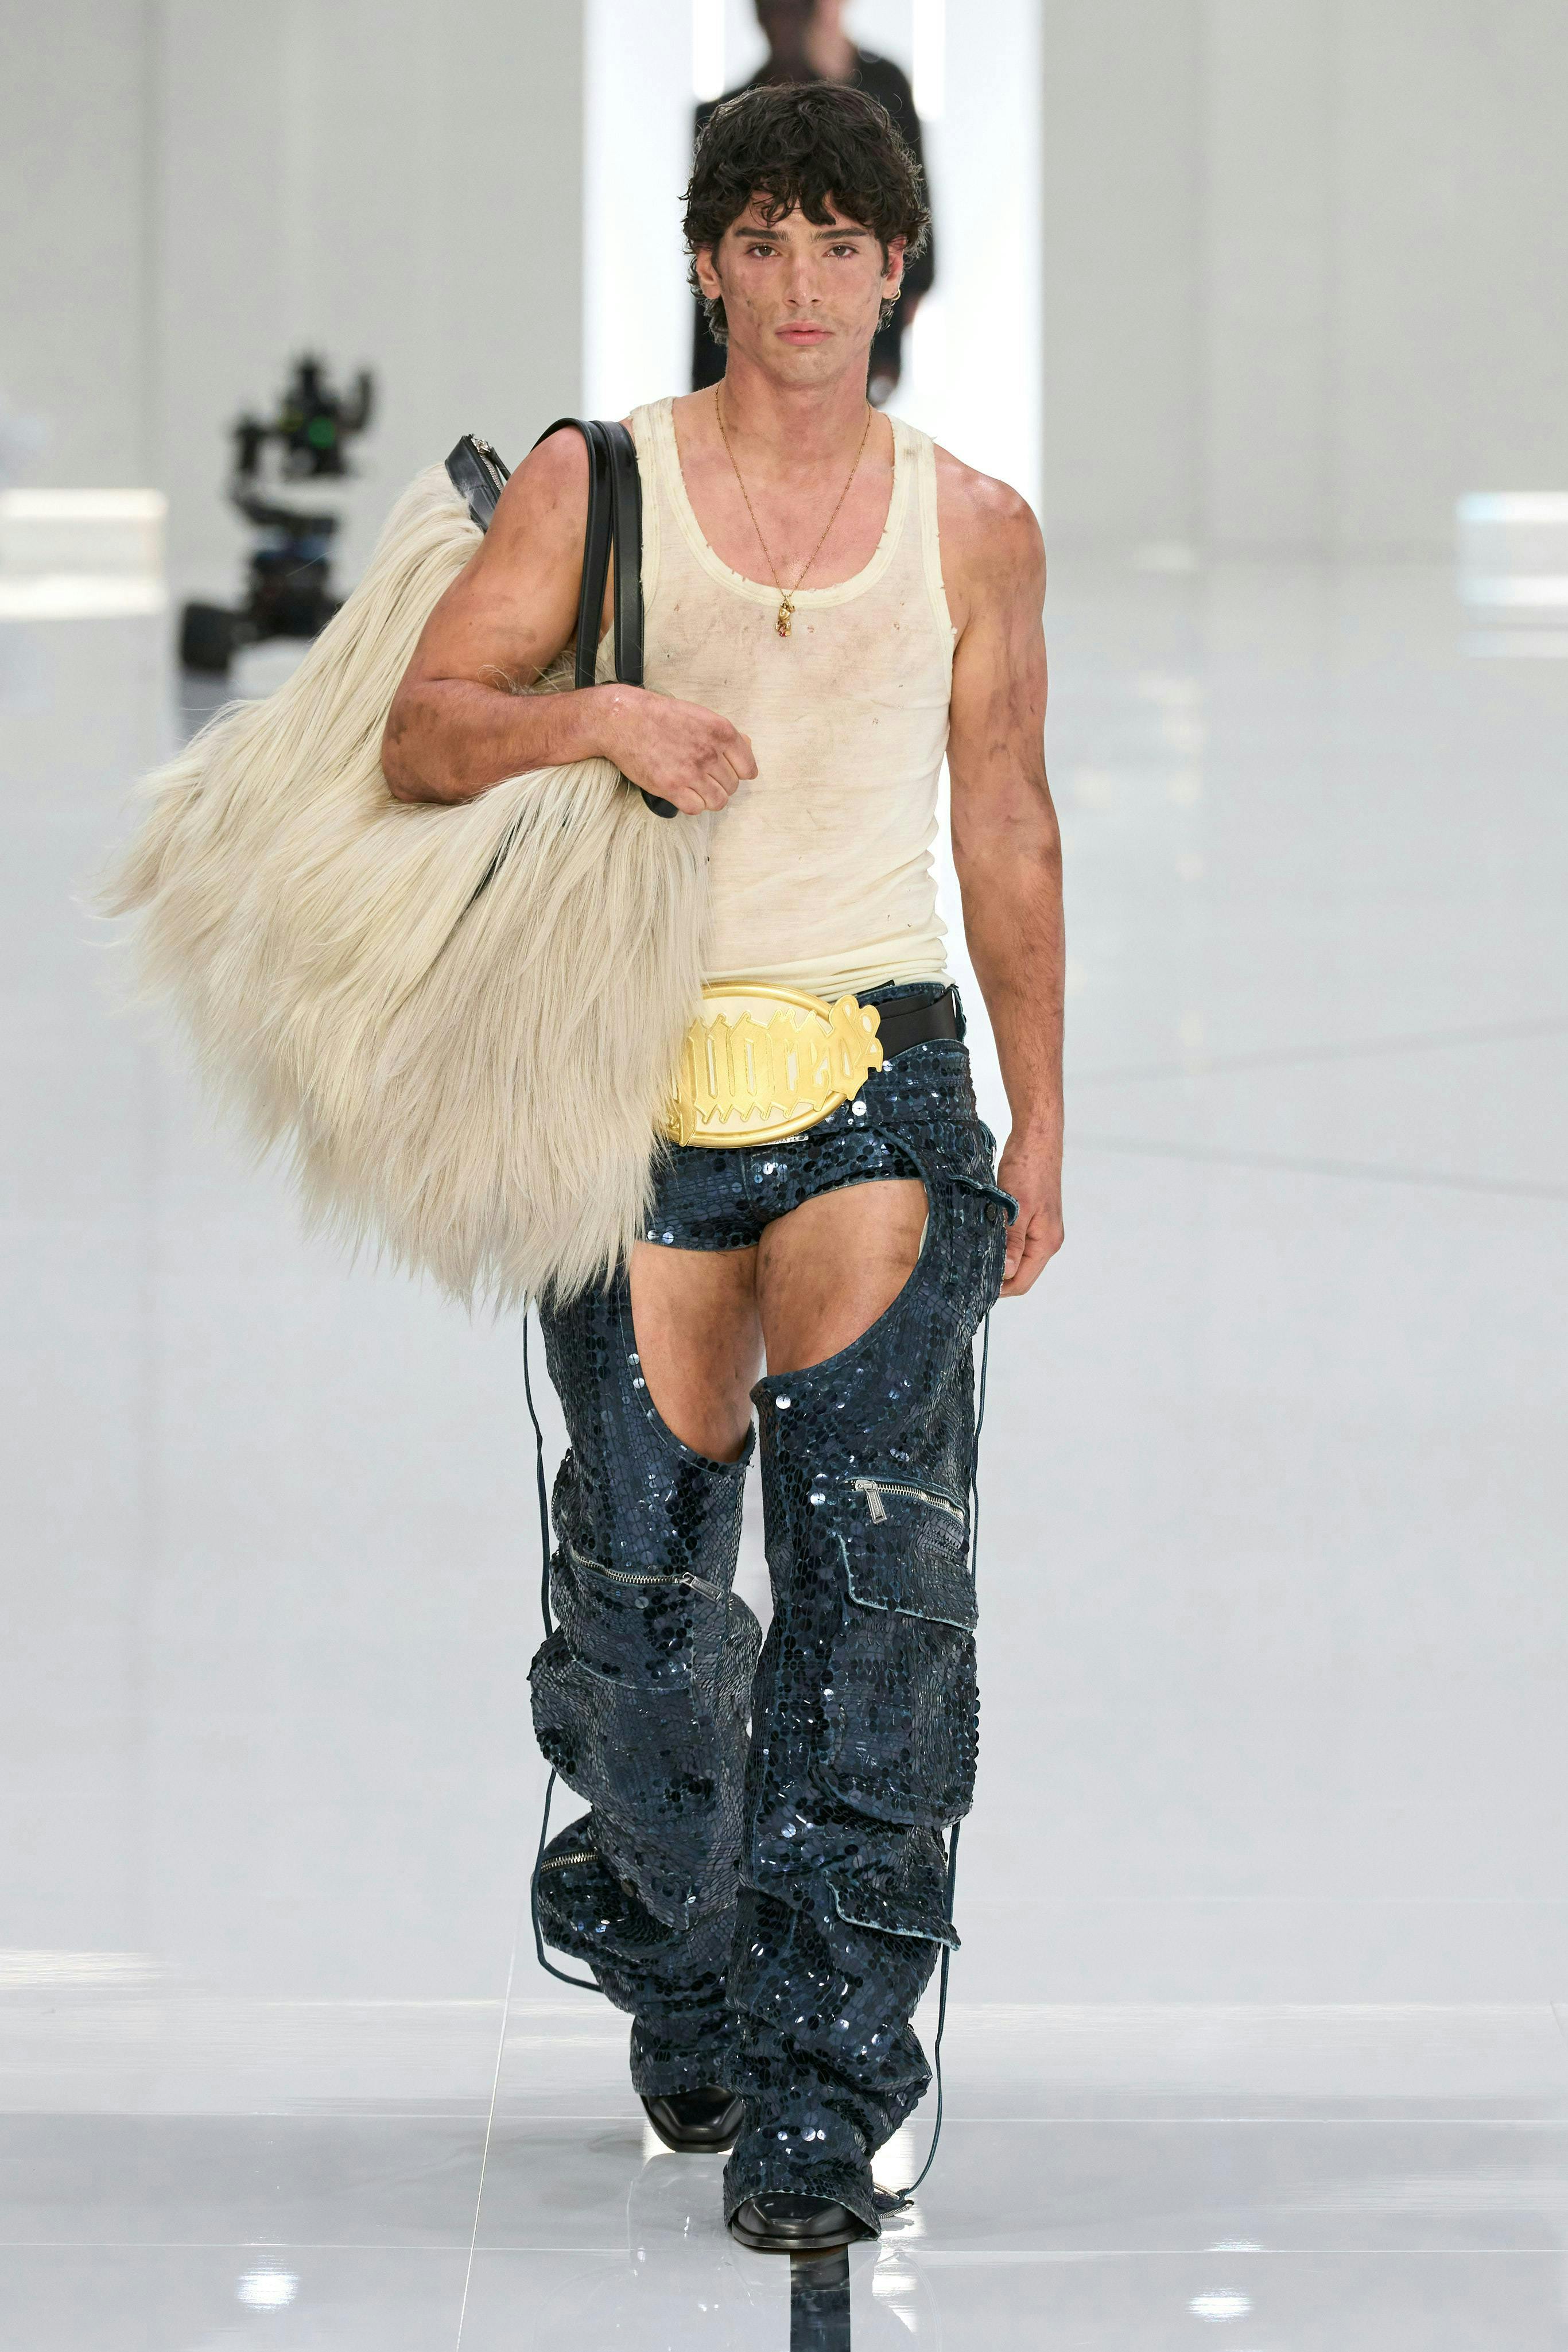 pants fashion handbag necklace adult male man person jeans shoe